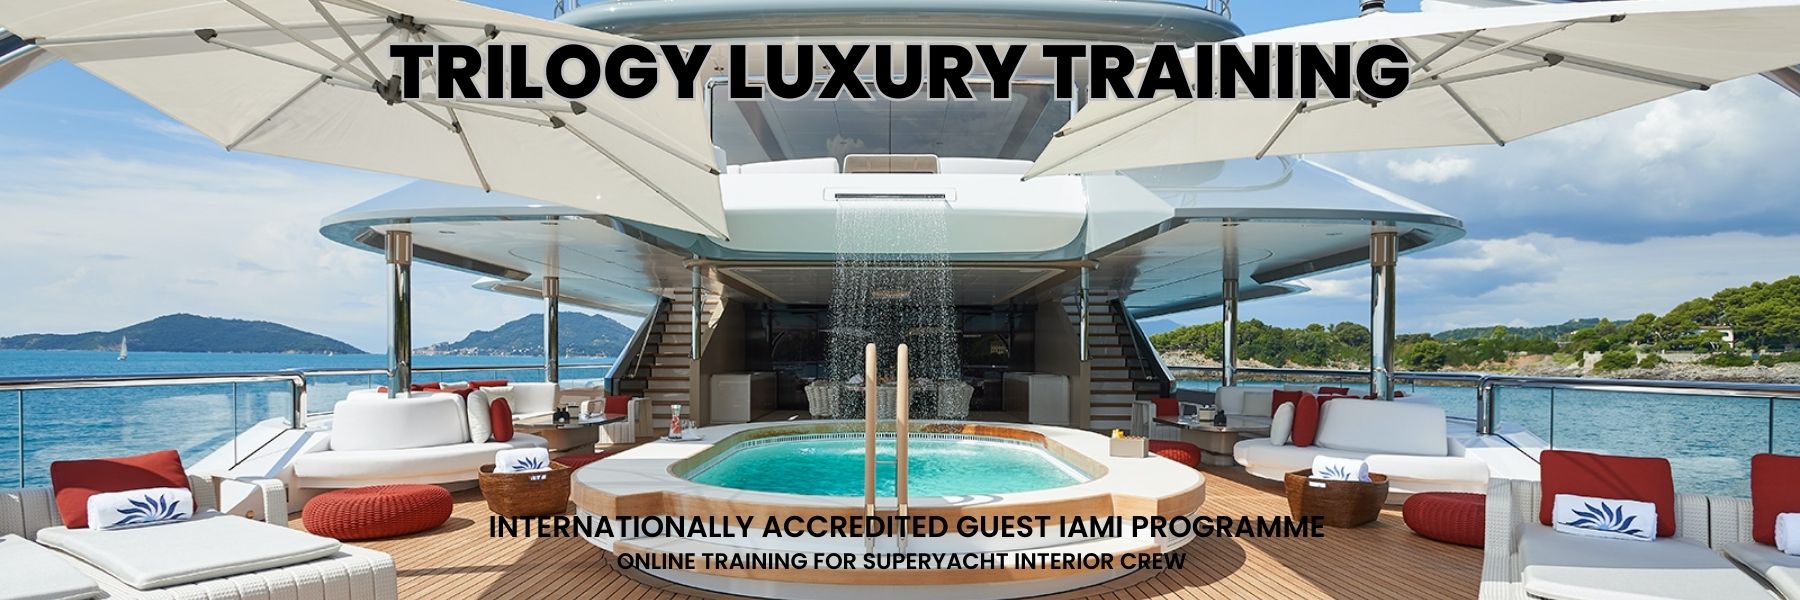 Trilogy Luxury Trainings School Trilogy Luxury Training School